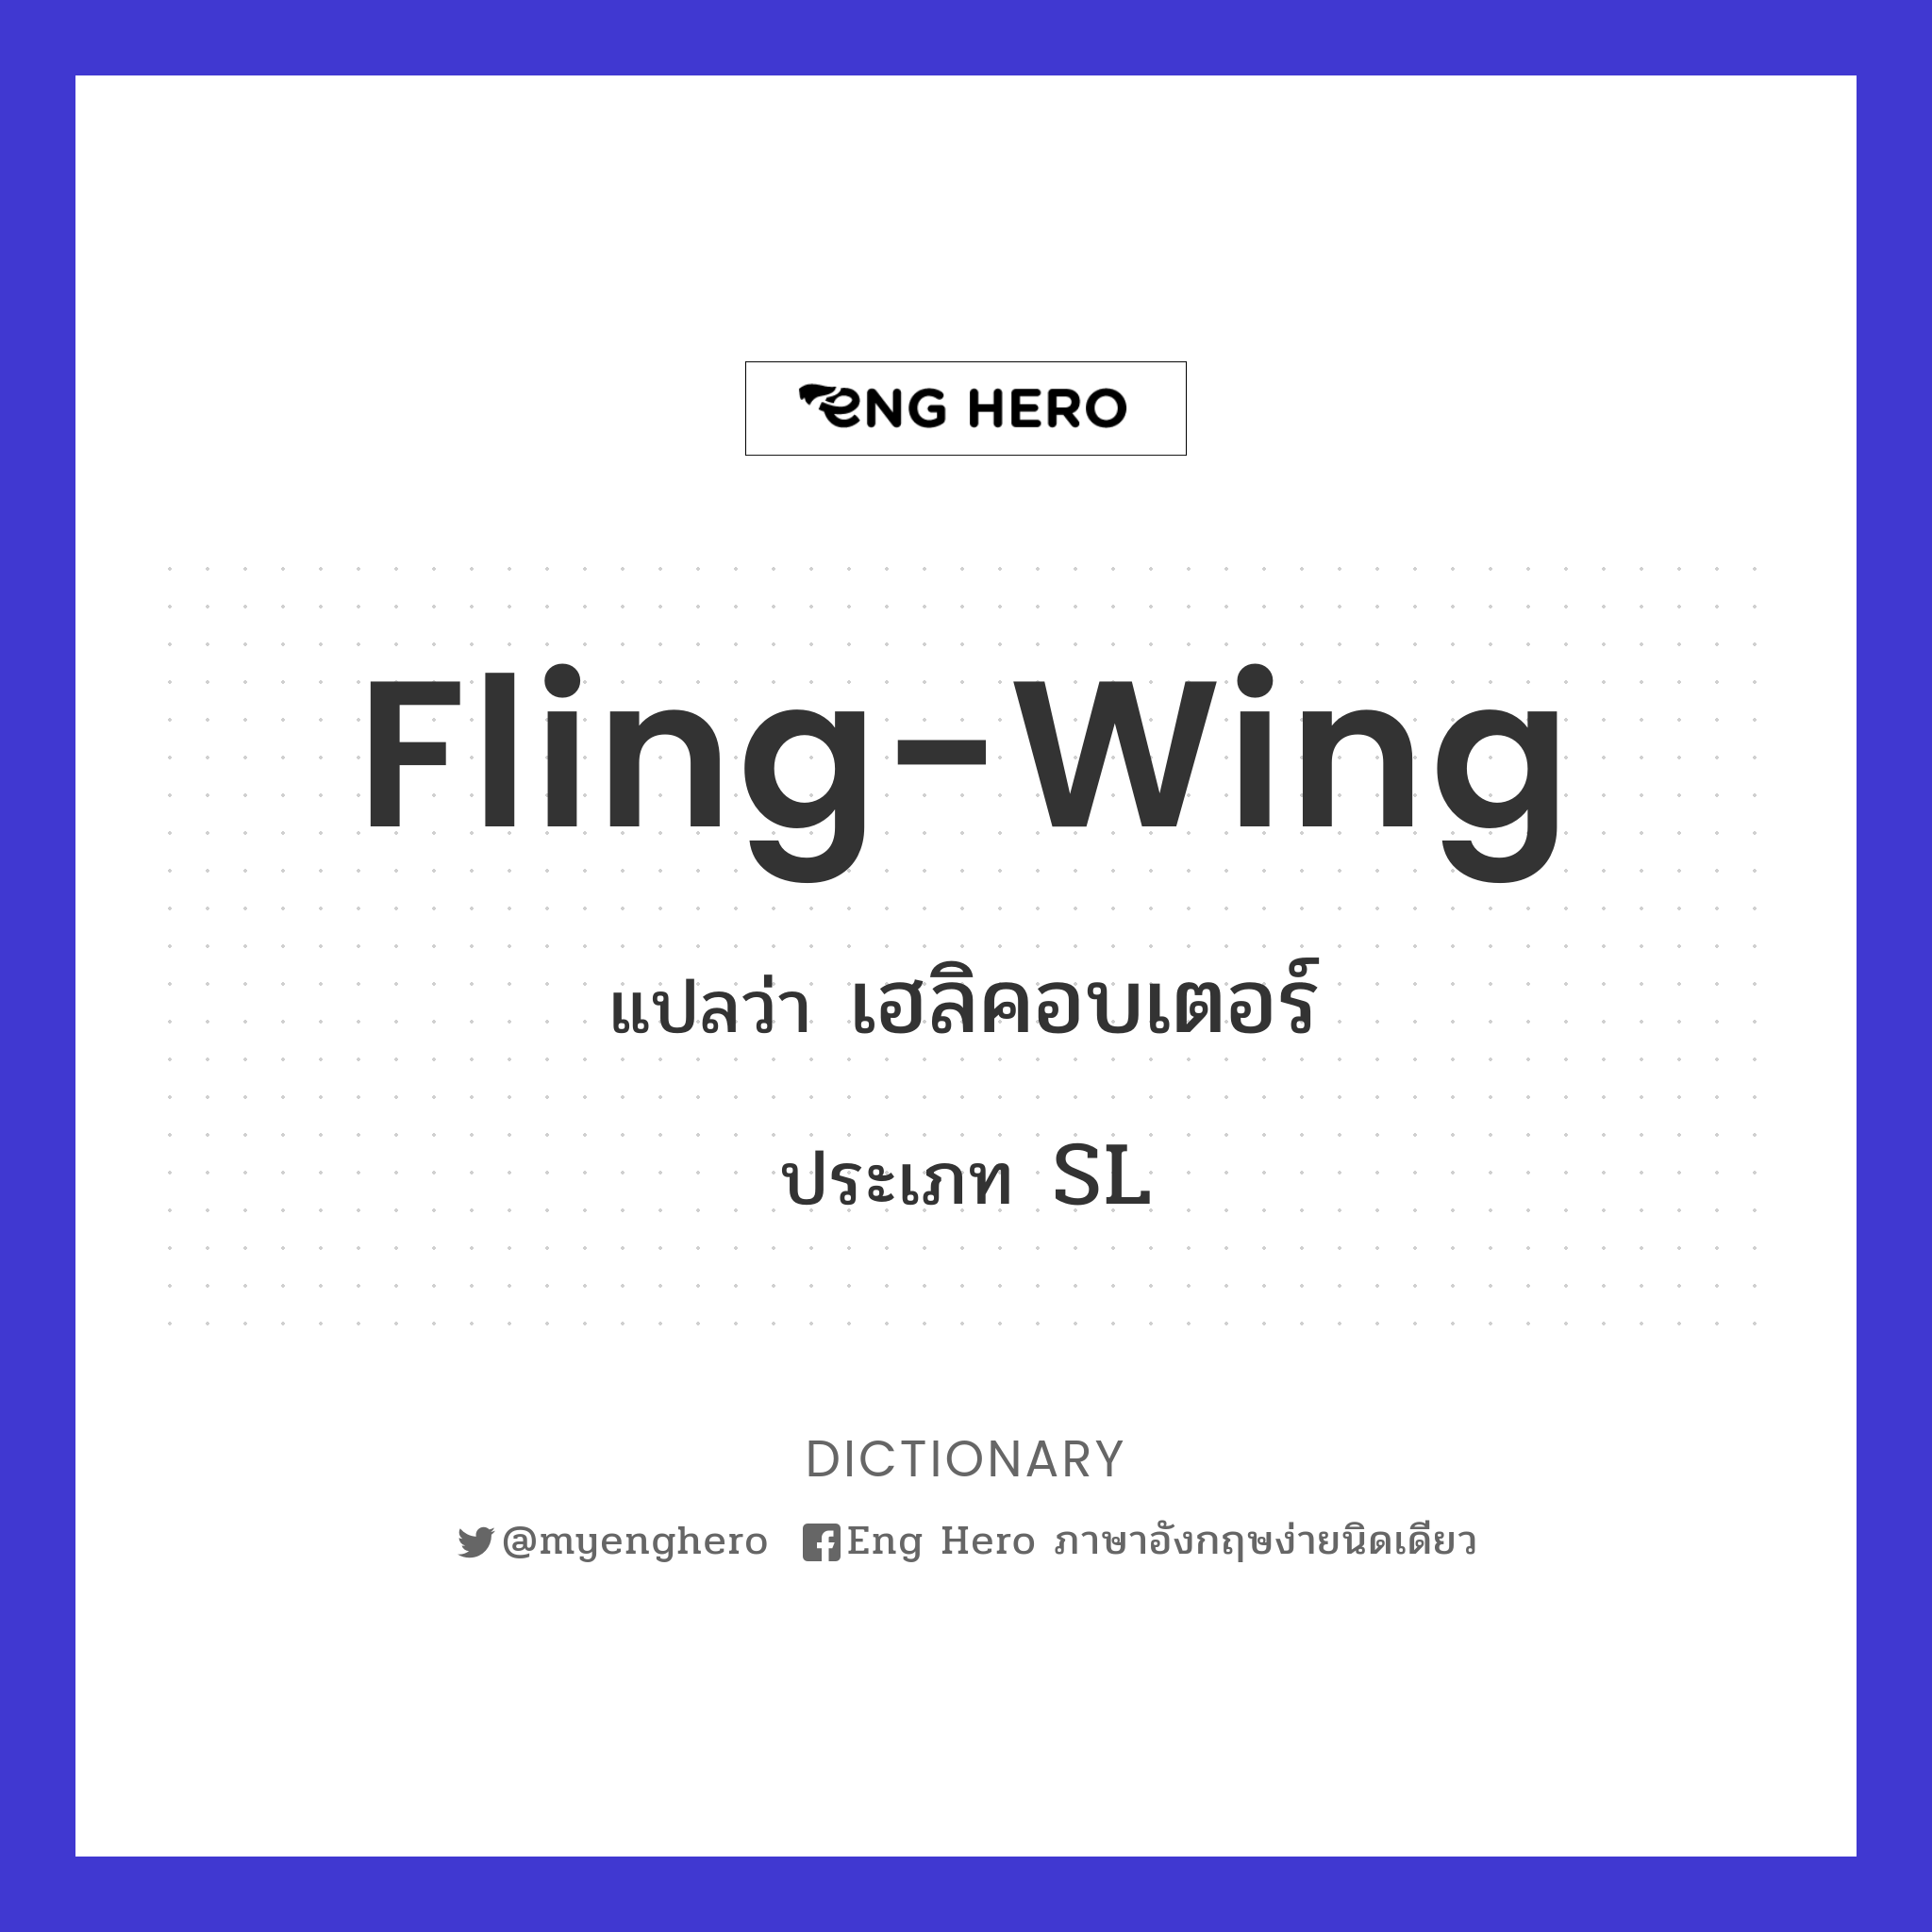 fling-wing